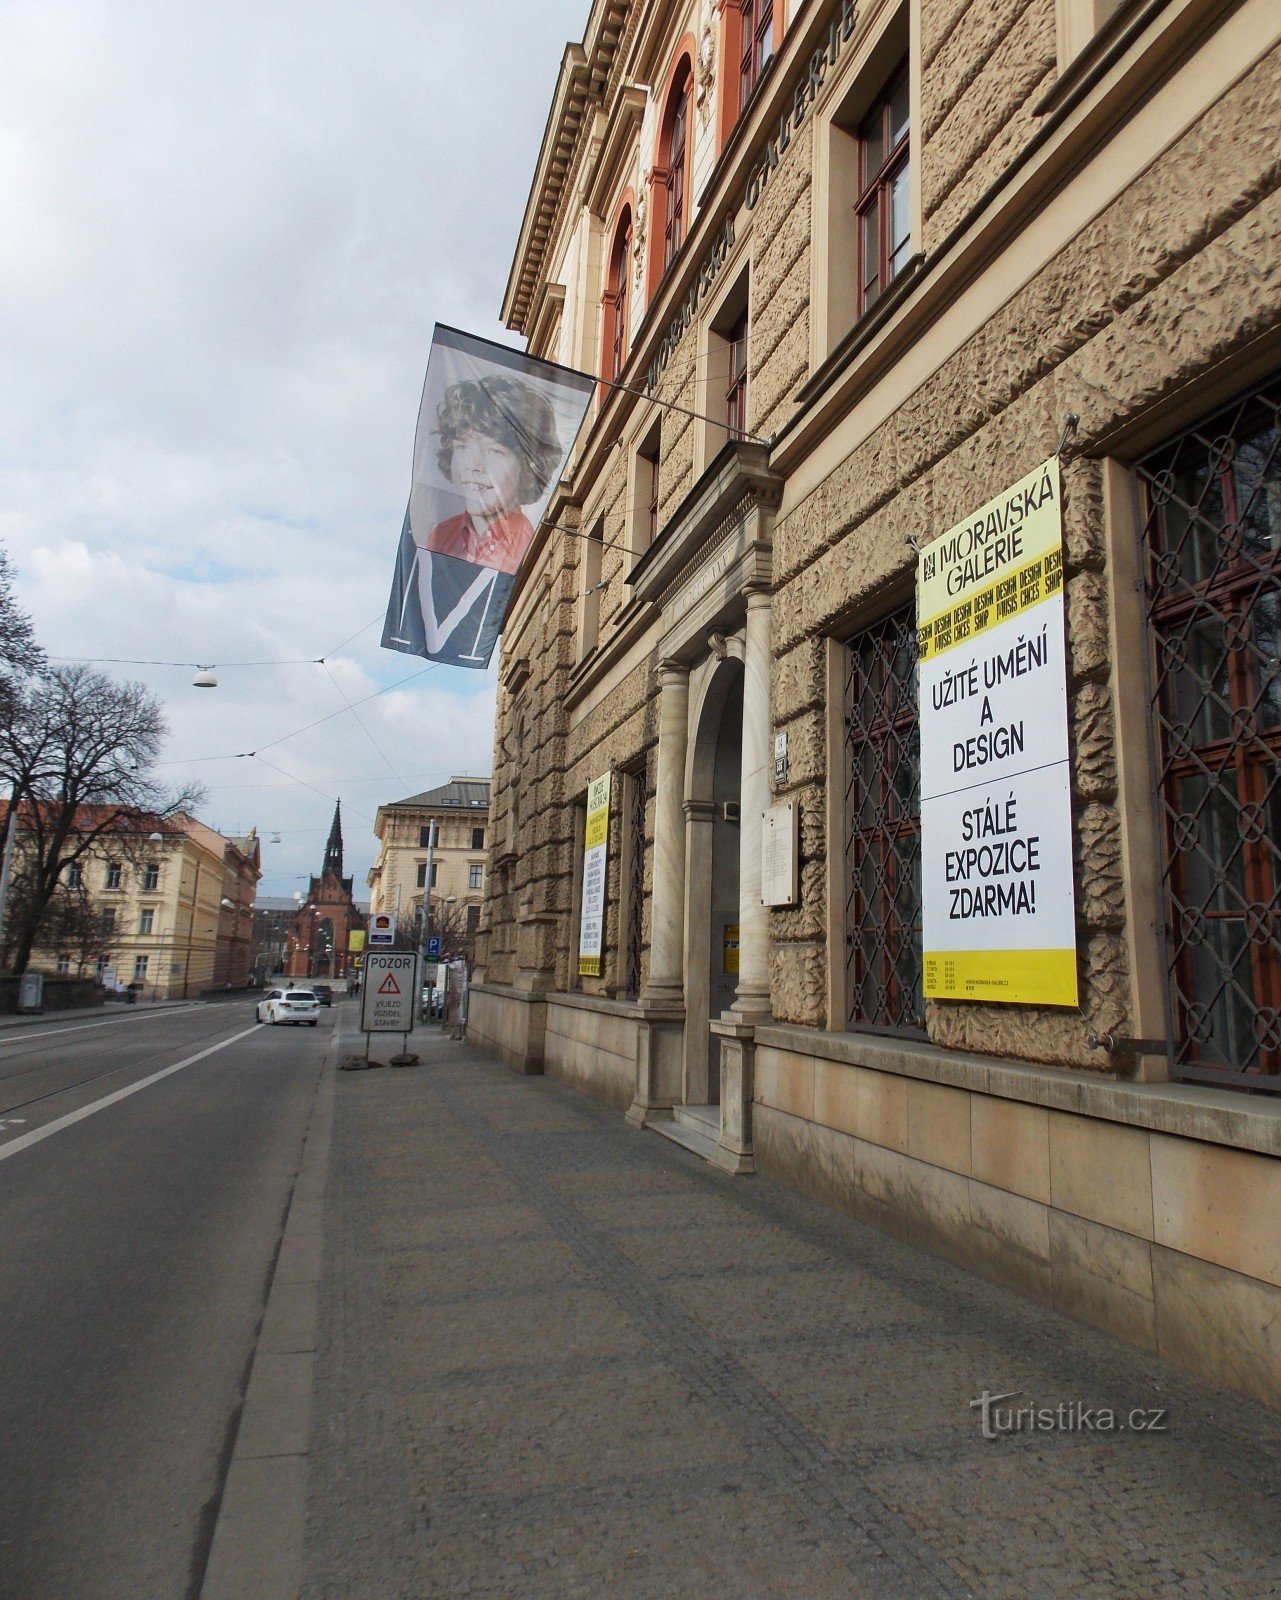 ブルノのシュピルベルクの下にある芸術産業博物館